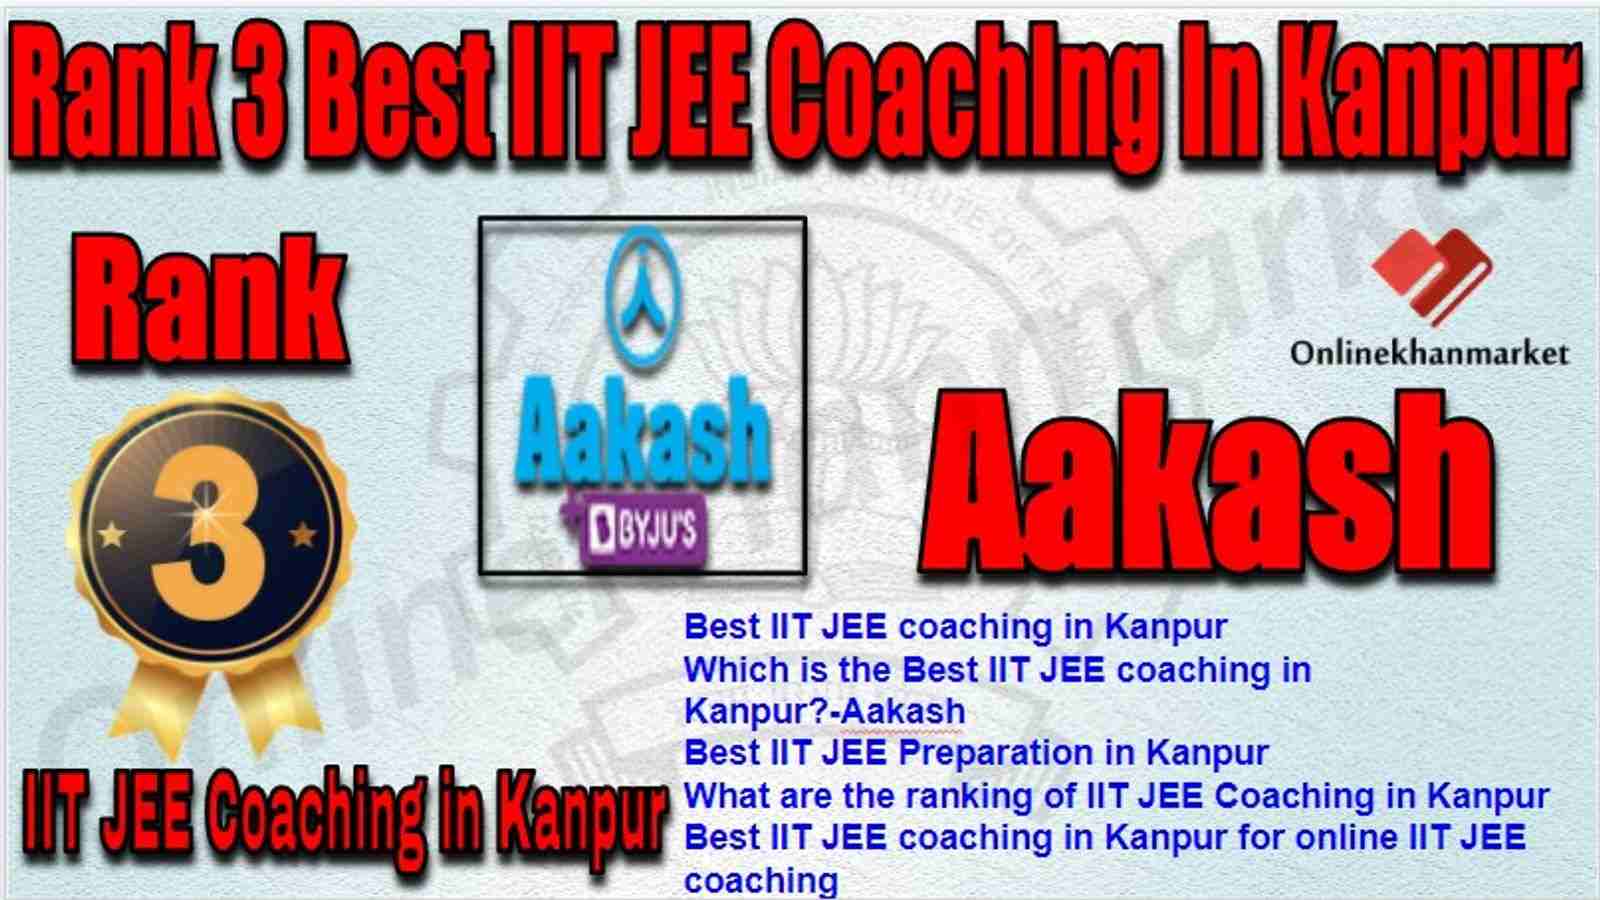 Rank 3 Best IIT JEE Coaching in kanpur